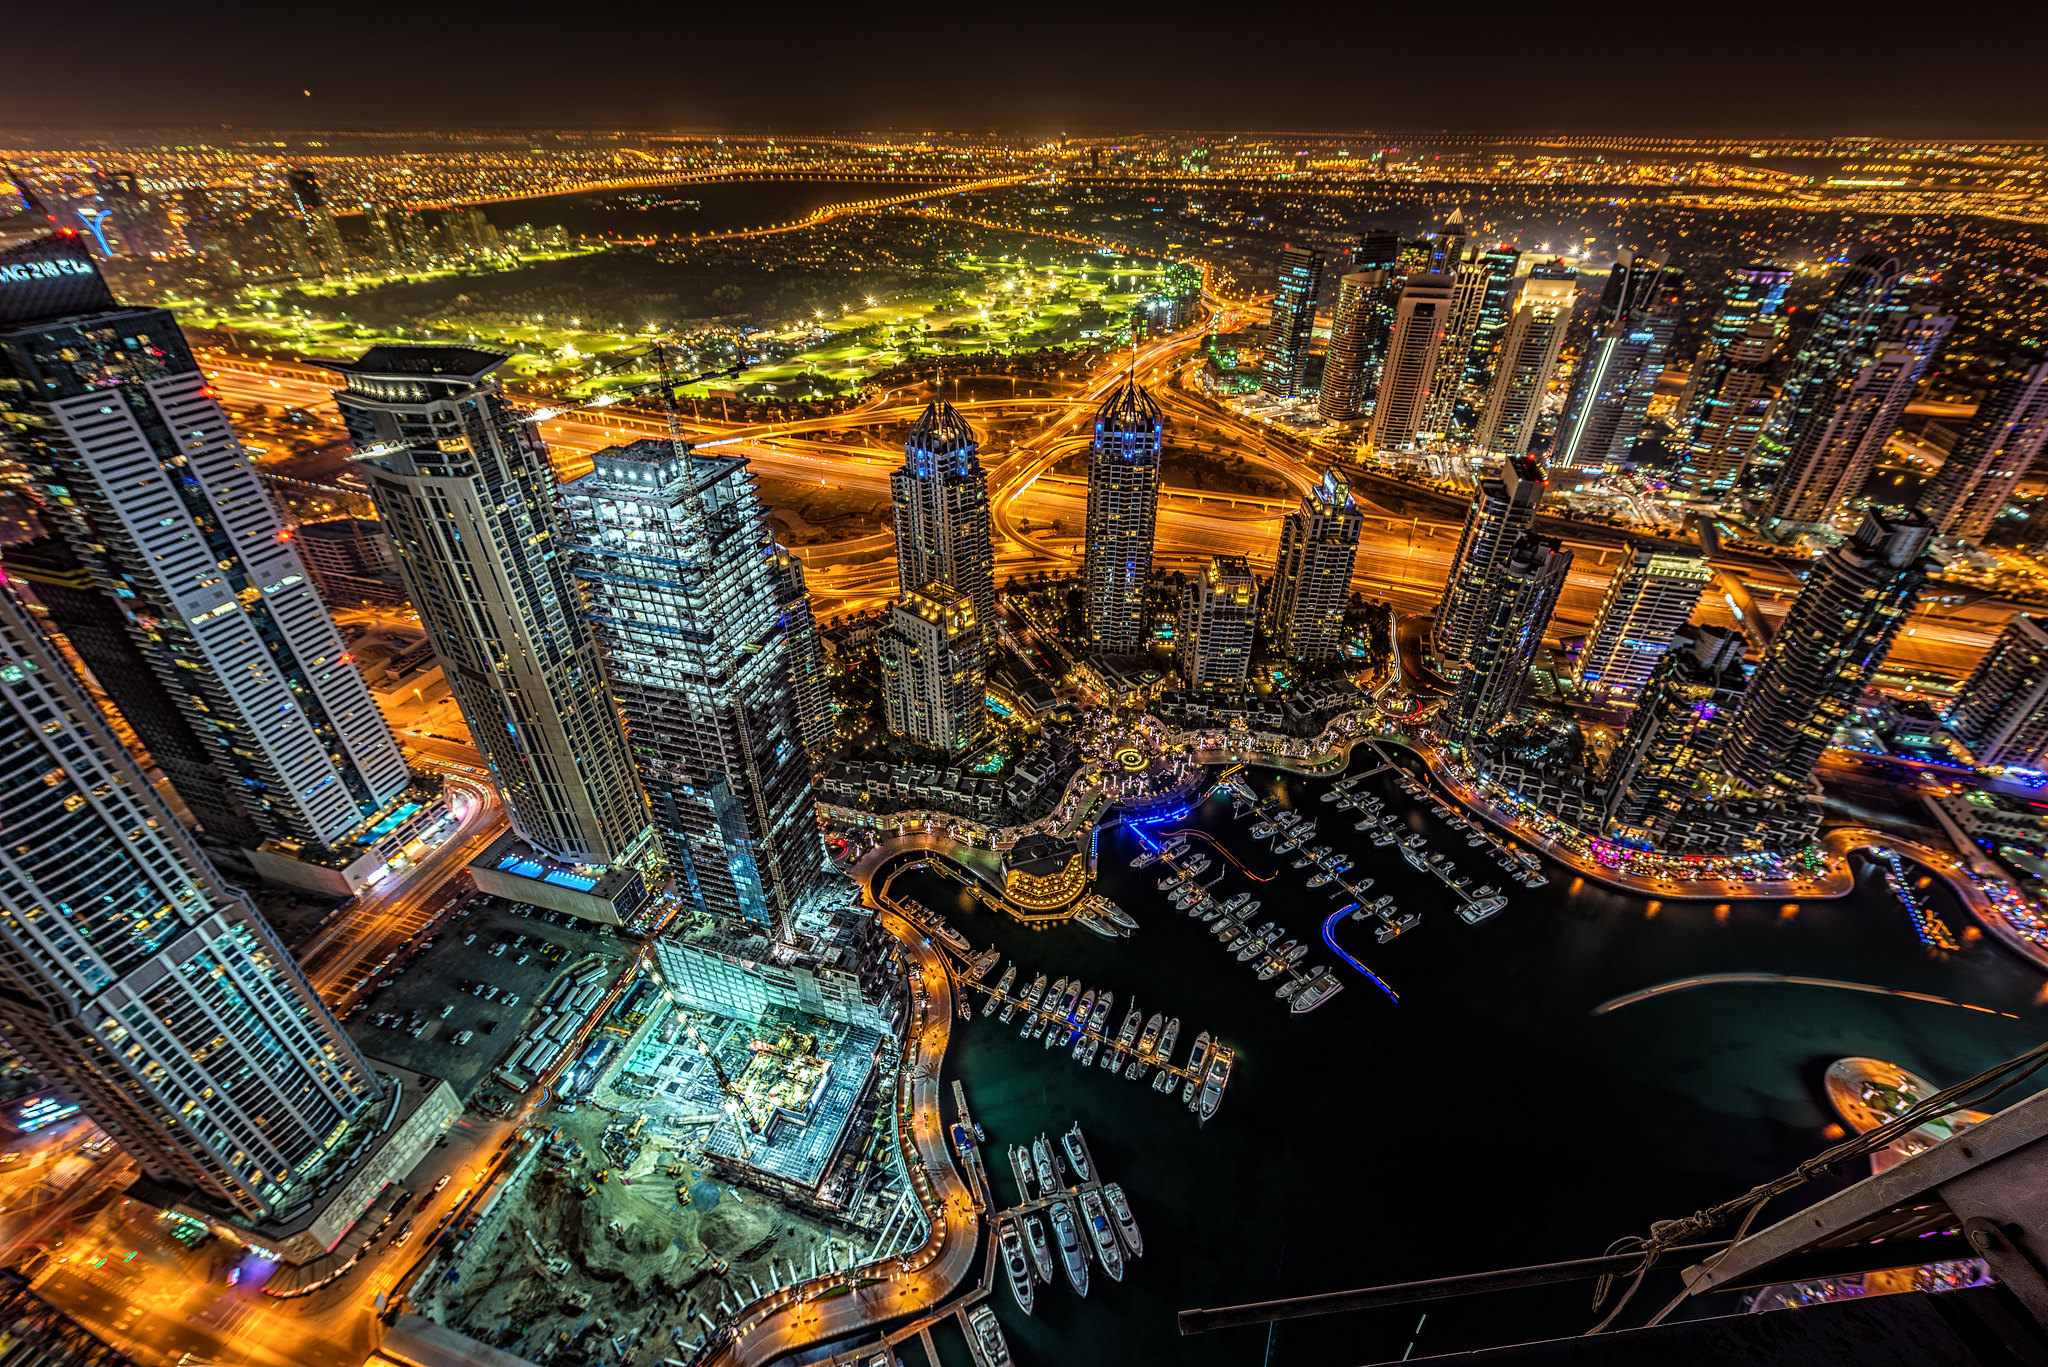 Wallpapers night cities Dubai illumination on the desktop